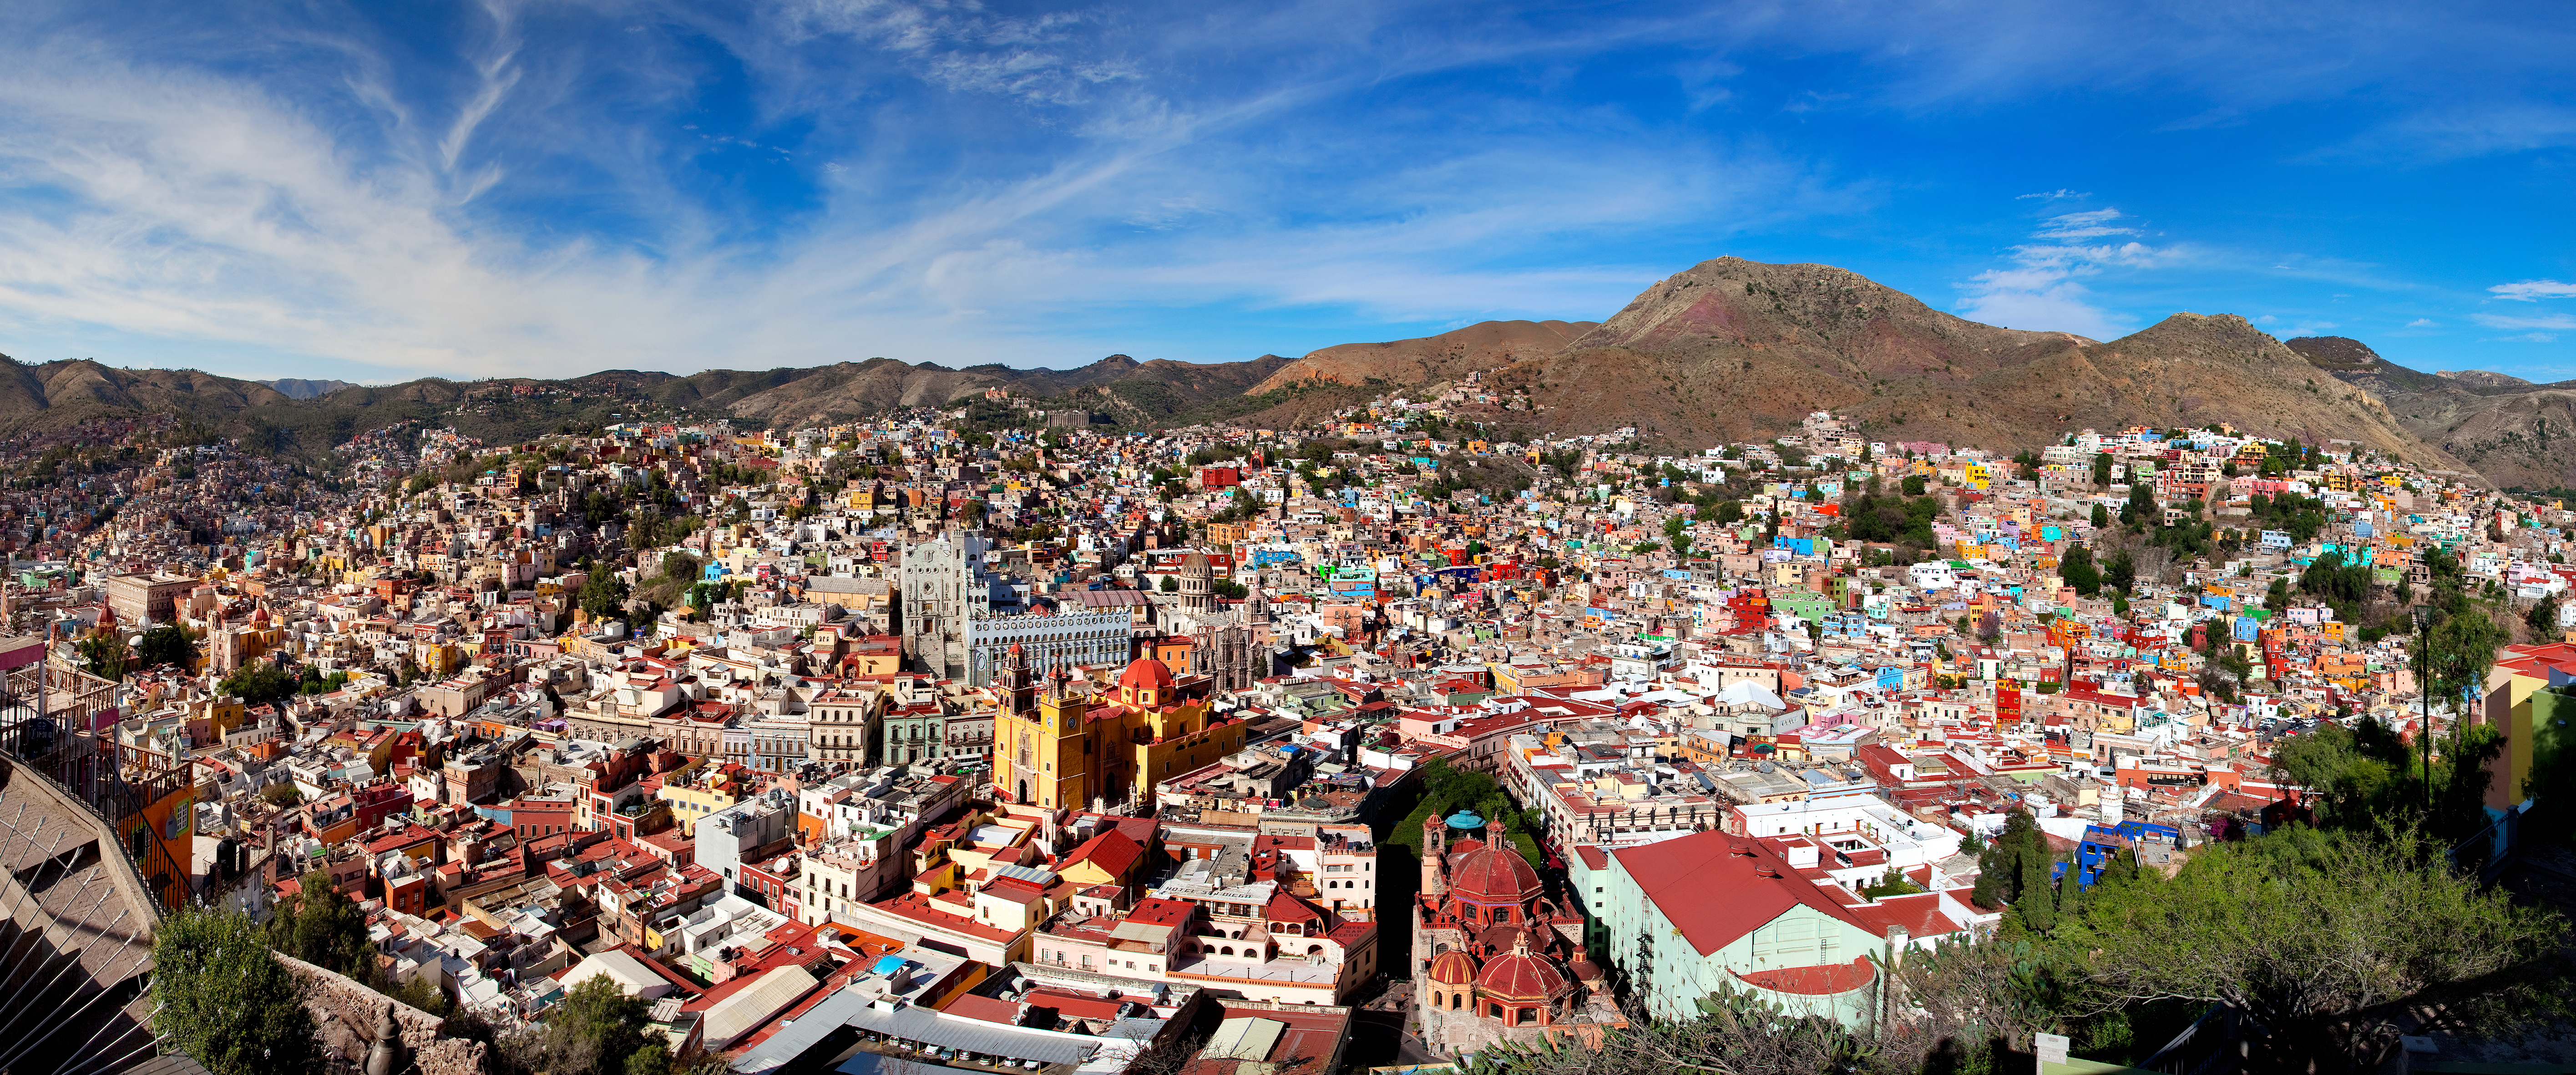 Vista panorámica de la ciudad de Guanajuato desde el mirador del Pípila. Guanajuato jugó un papel de gran importancia en la Guerra de Independencia de México.